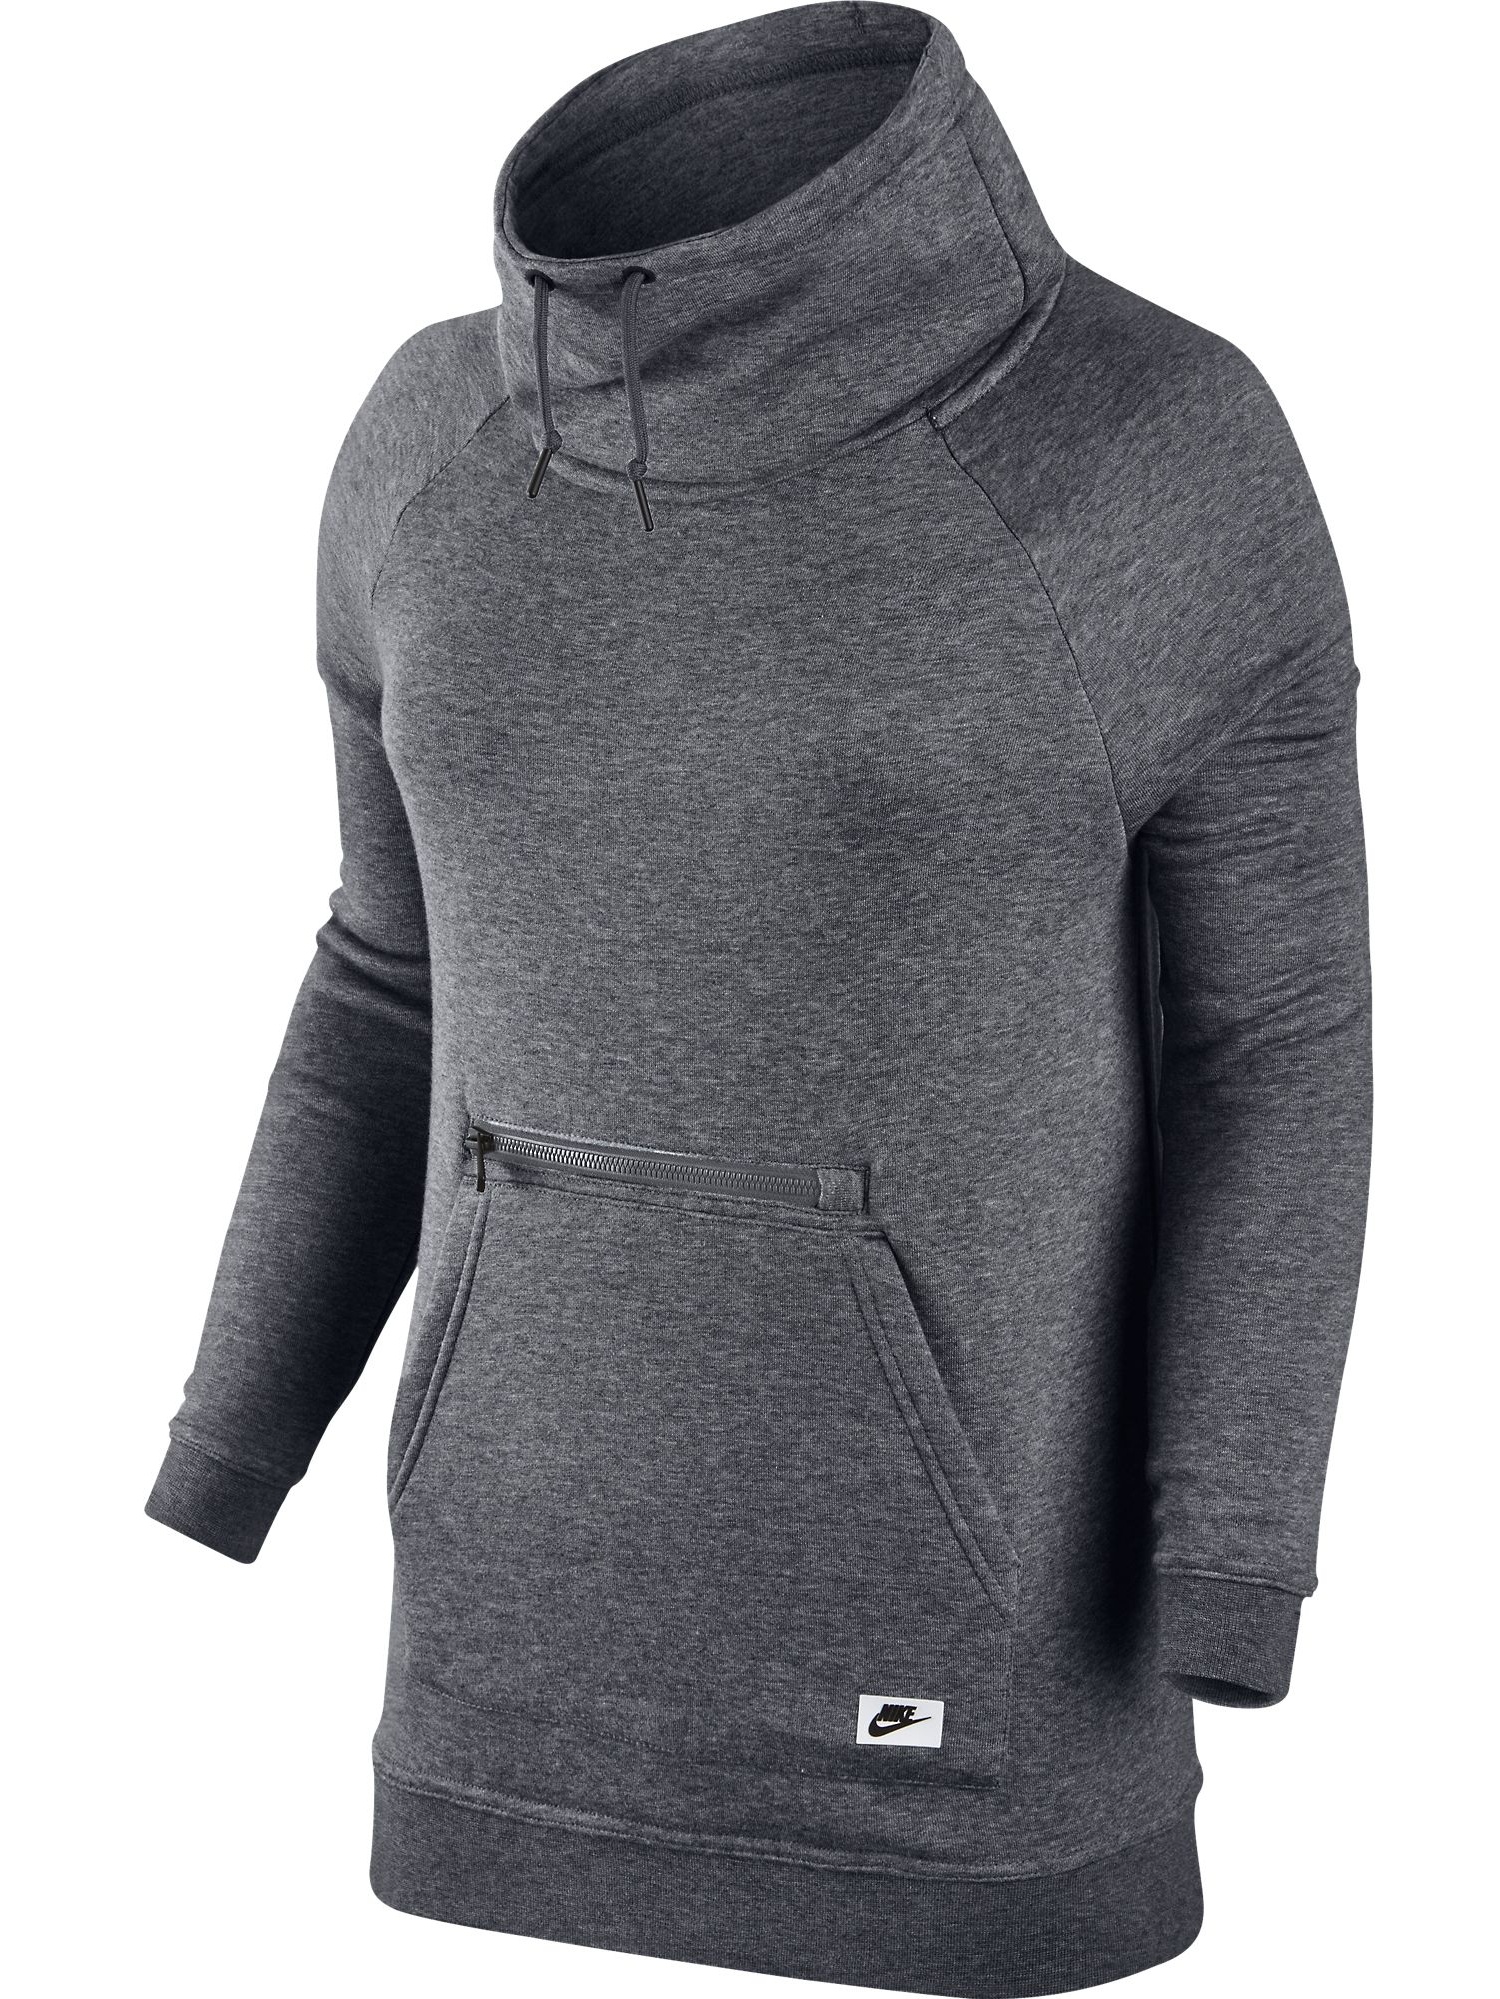 Nike Sportswear Modern Funnel Neck Women's Sweatshirt Grey/Black 803599-091 - image 1 of 2